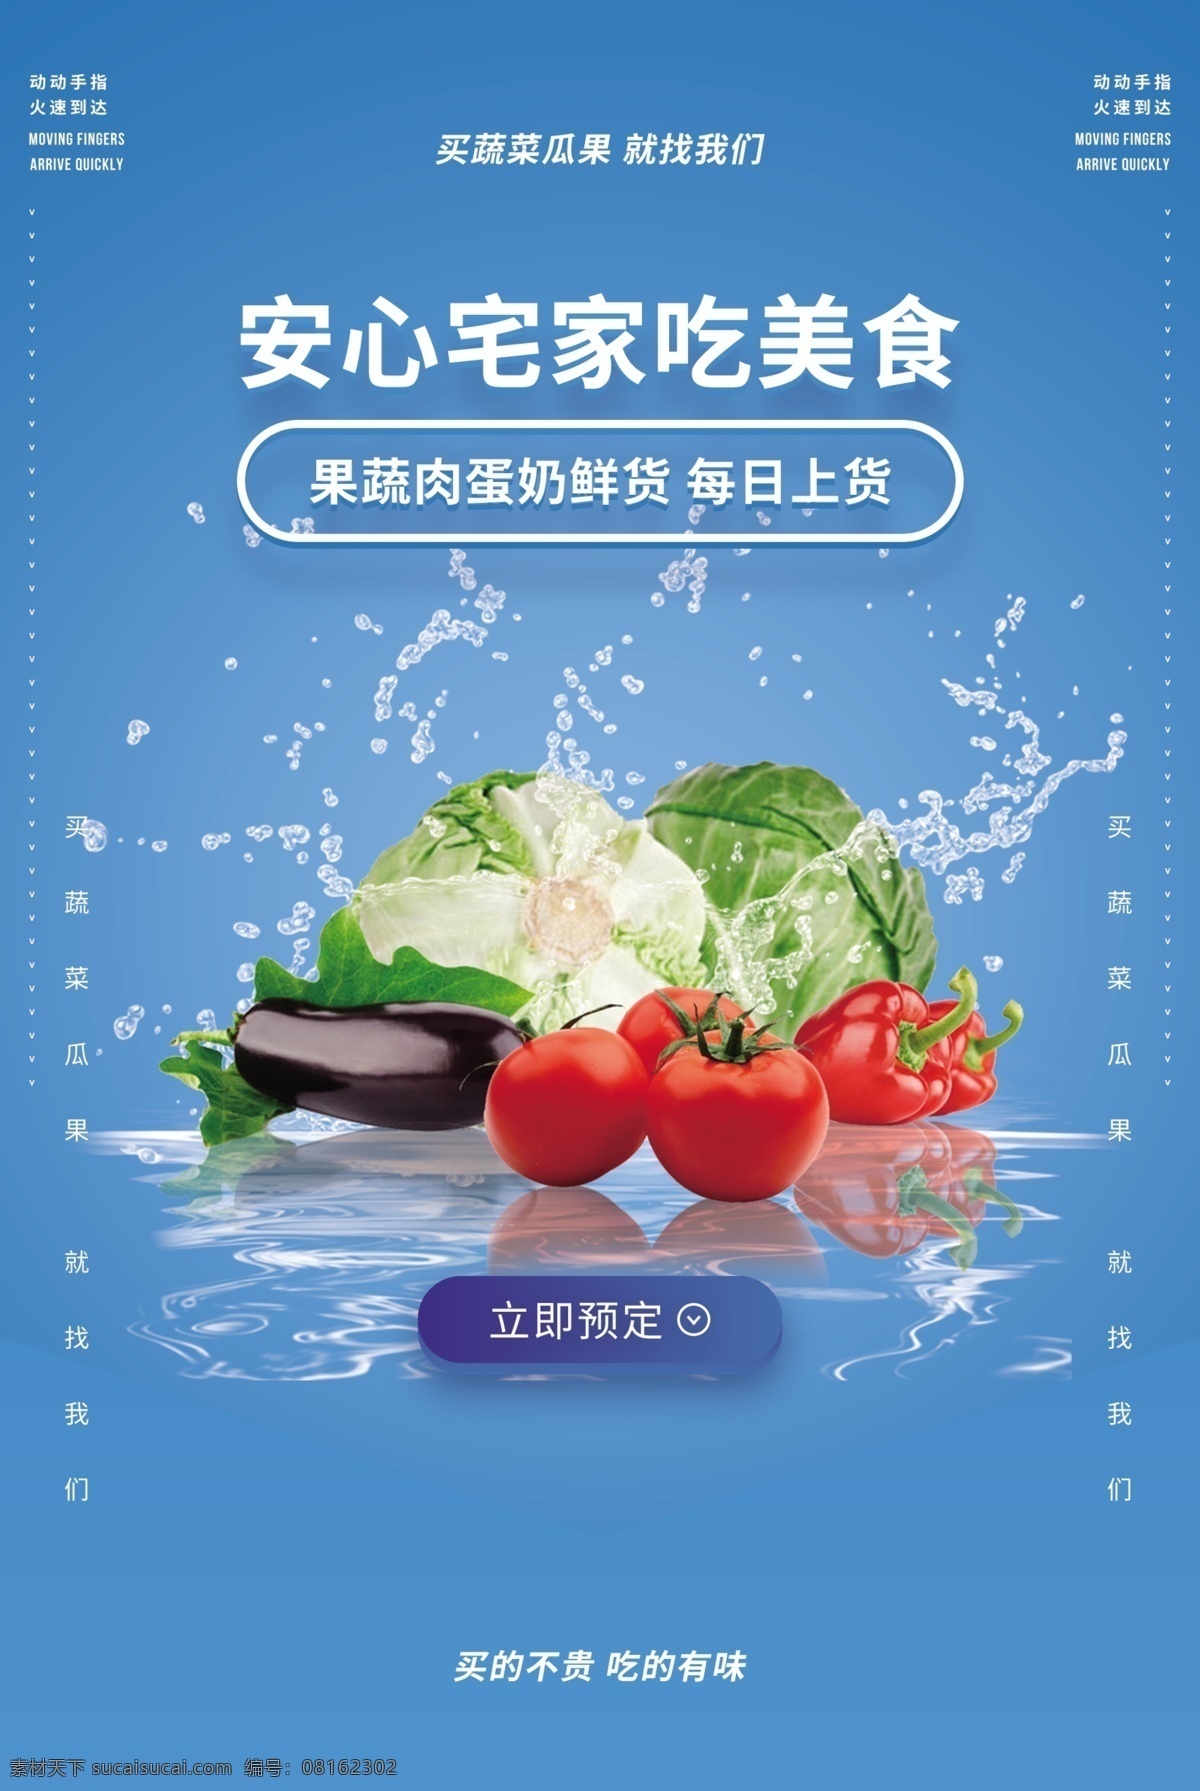 蔬菜水果 蔬菜海报 新鲜蔬菜 蔬菜 蔬菜广告 有机蔬菜 蔬菜展板 蔬菜店海报 蔬菜店 共享